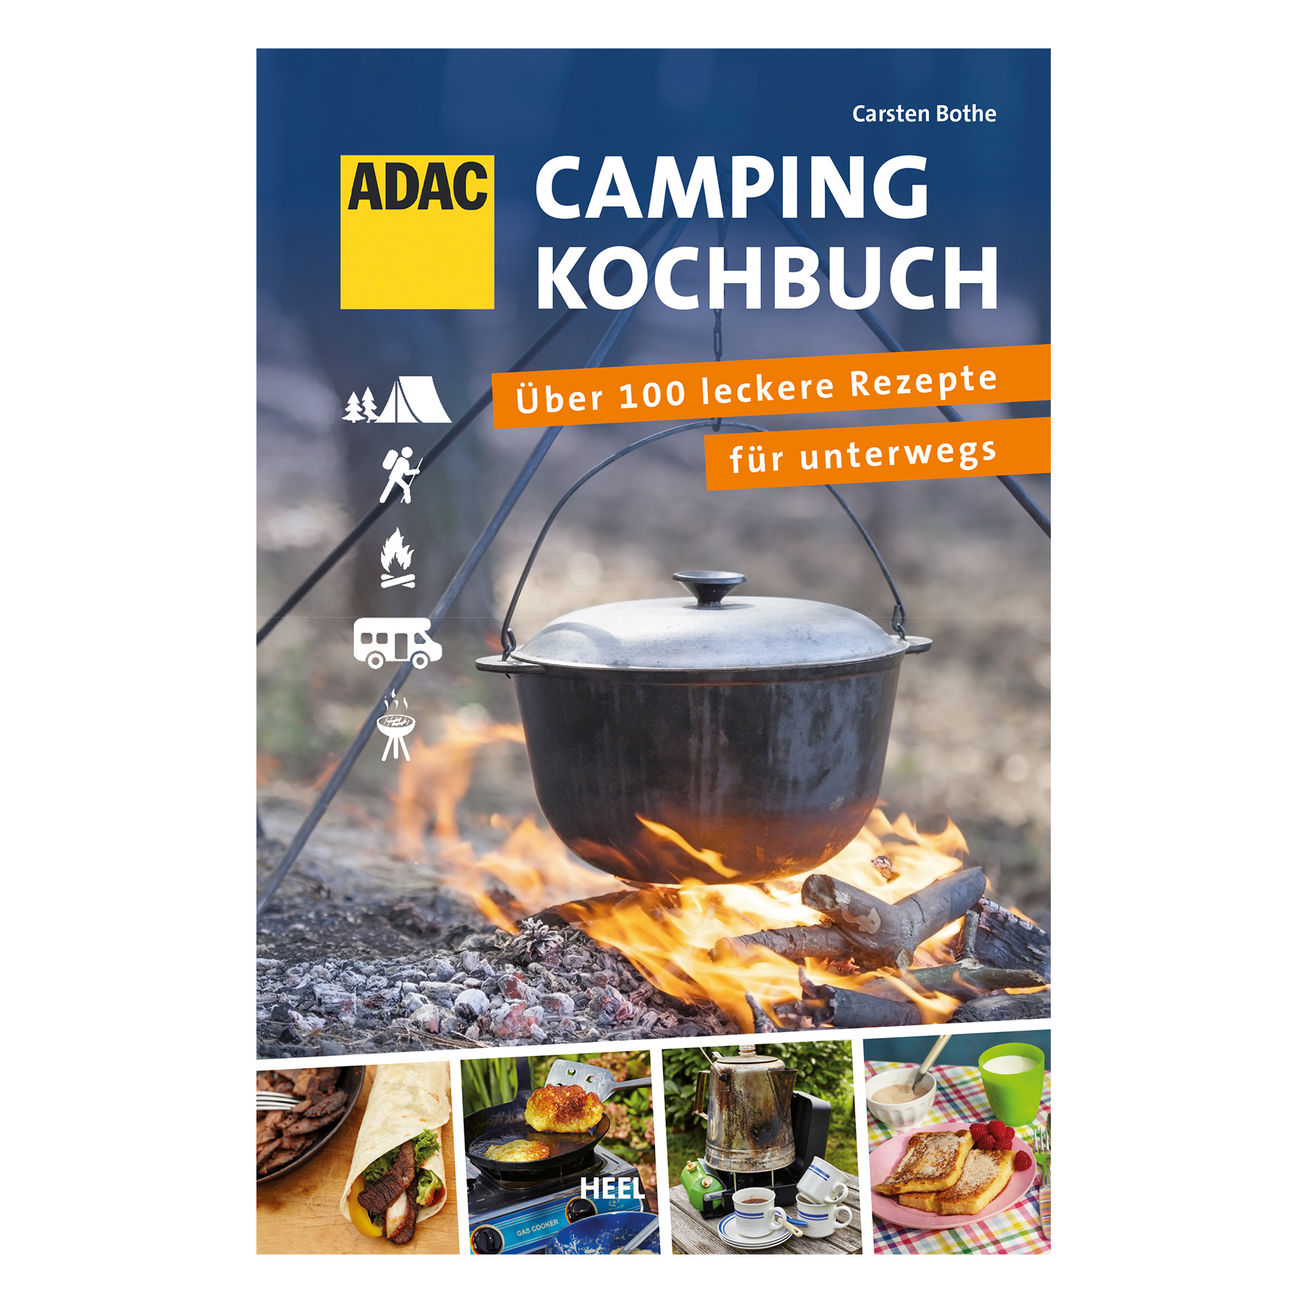 ADAC Camping-Kochbuch - Über 100 leckere Rezepte für unterwegs